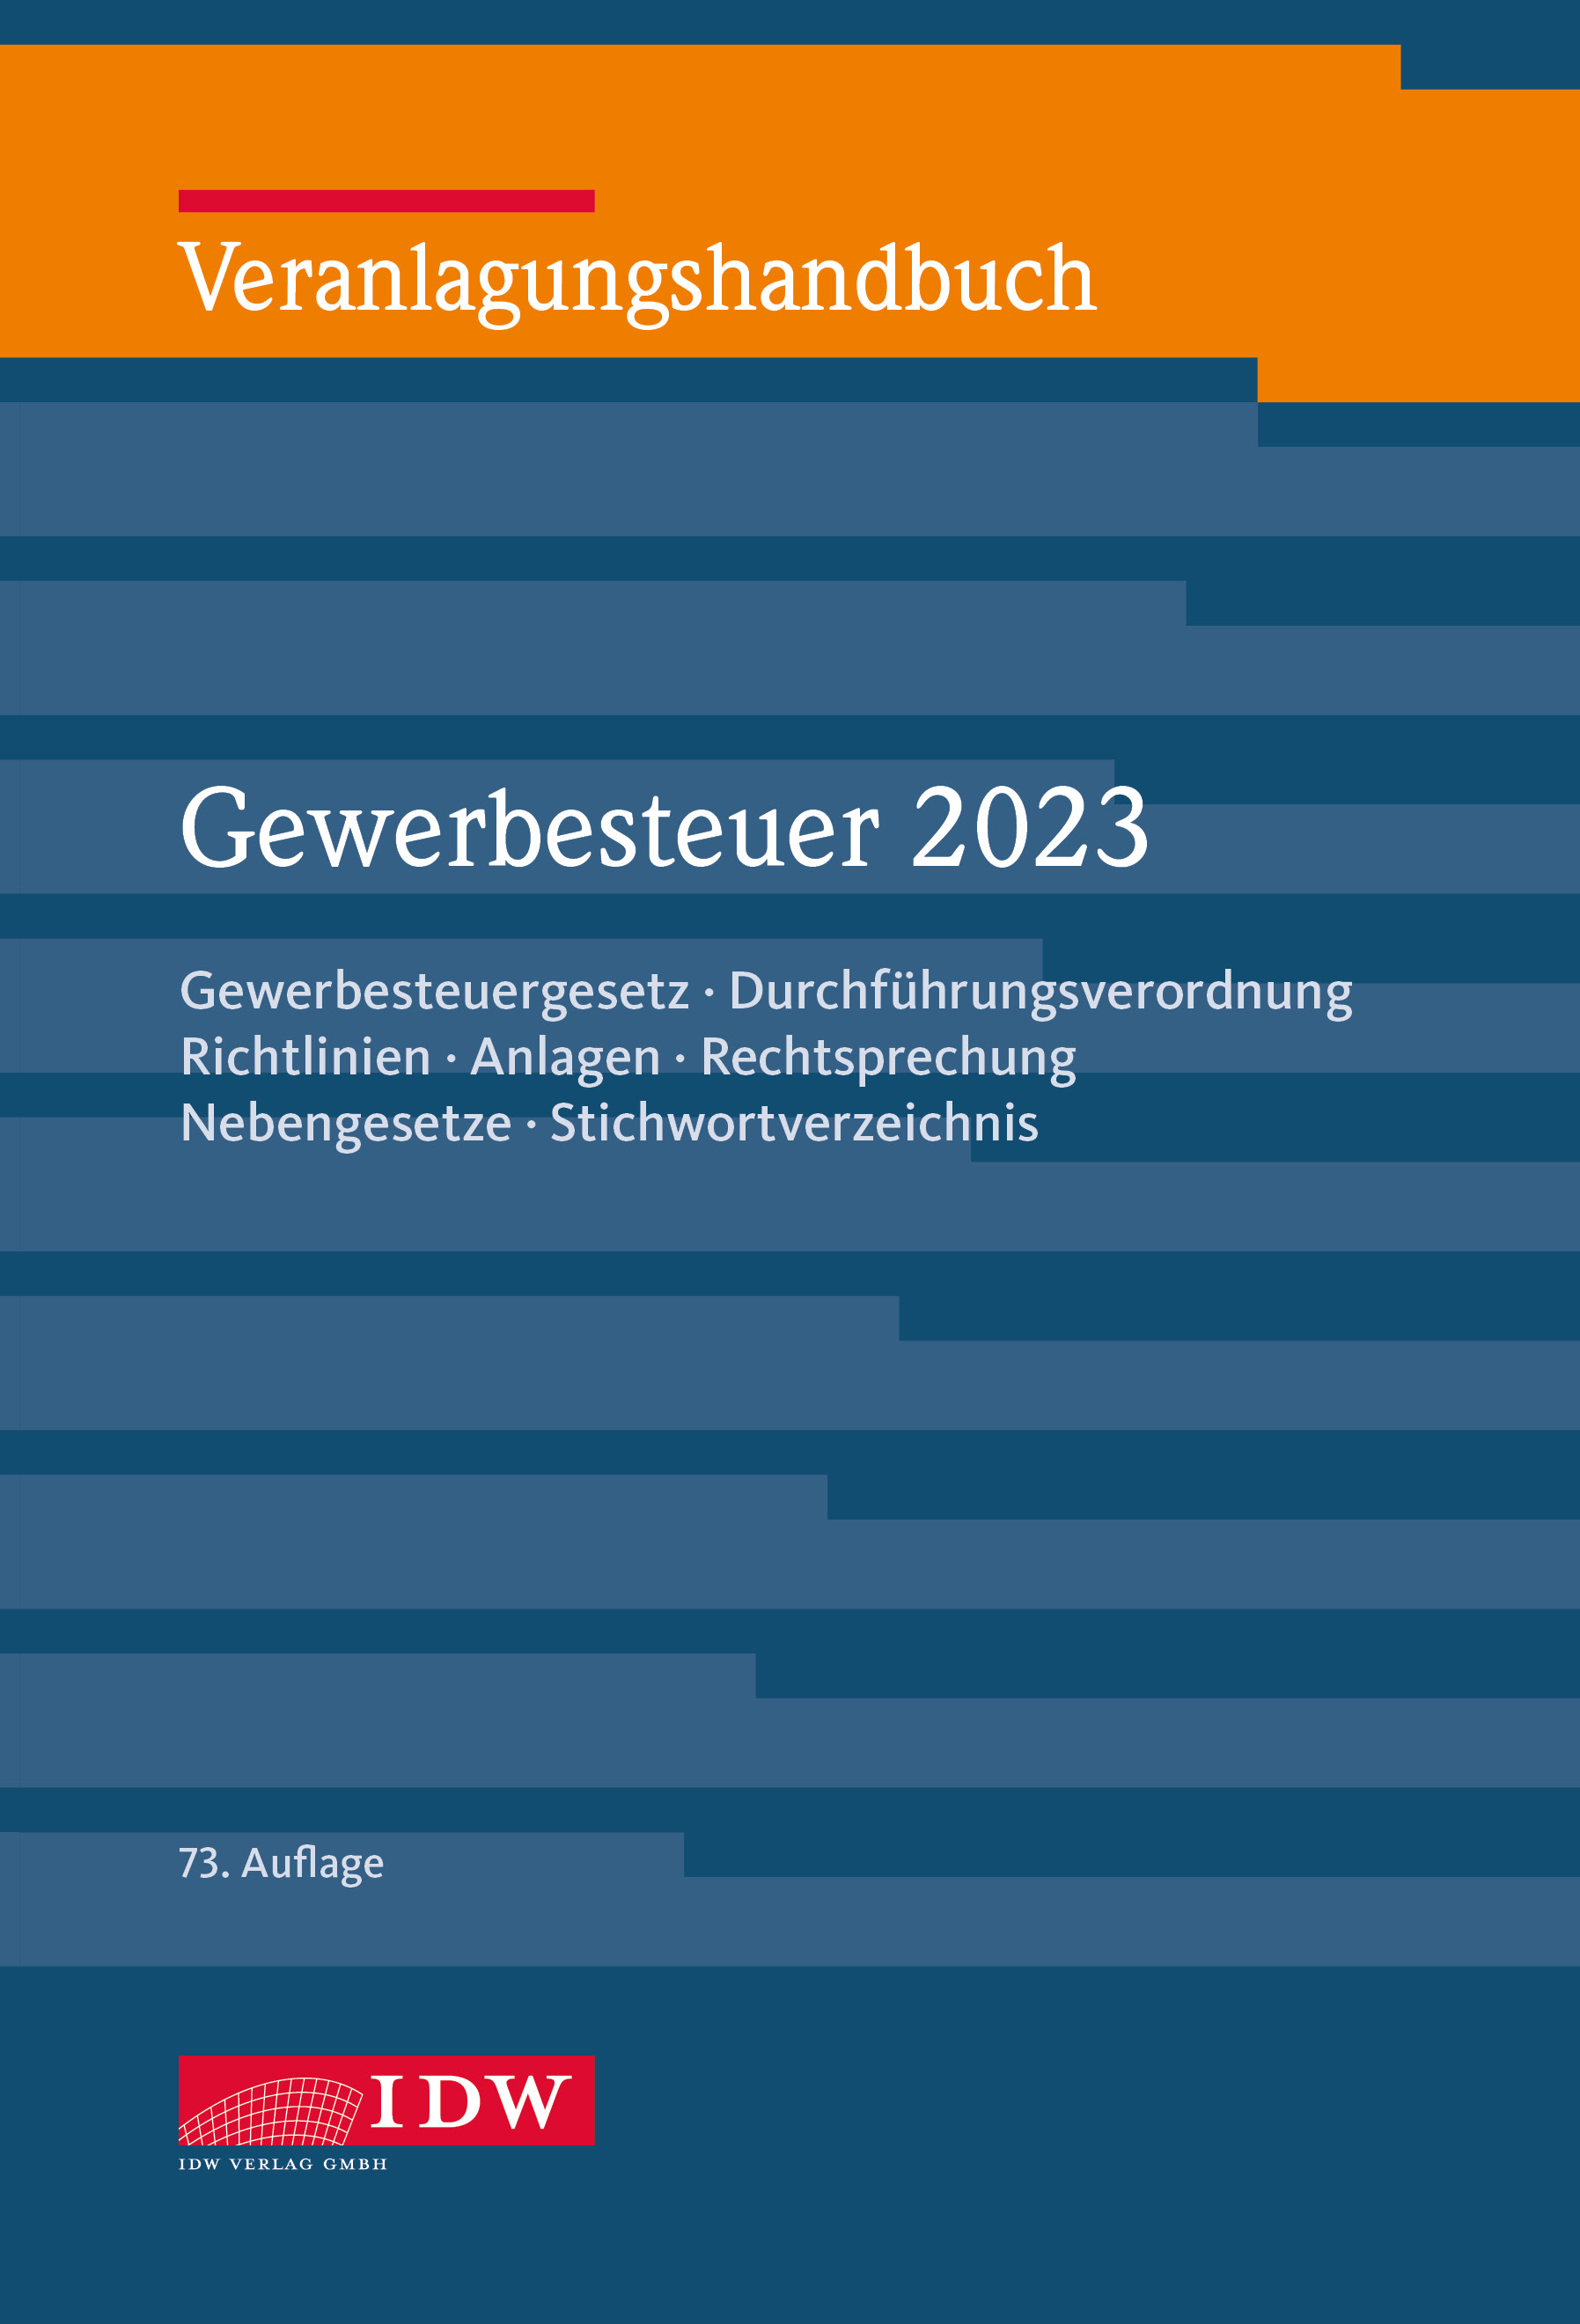 Veranlagungshandbuch Gewerbesteuer 2023